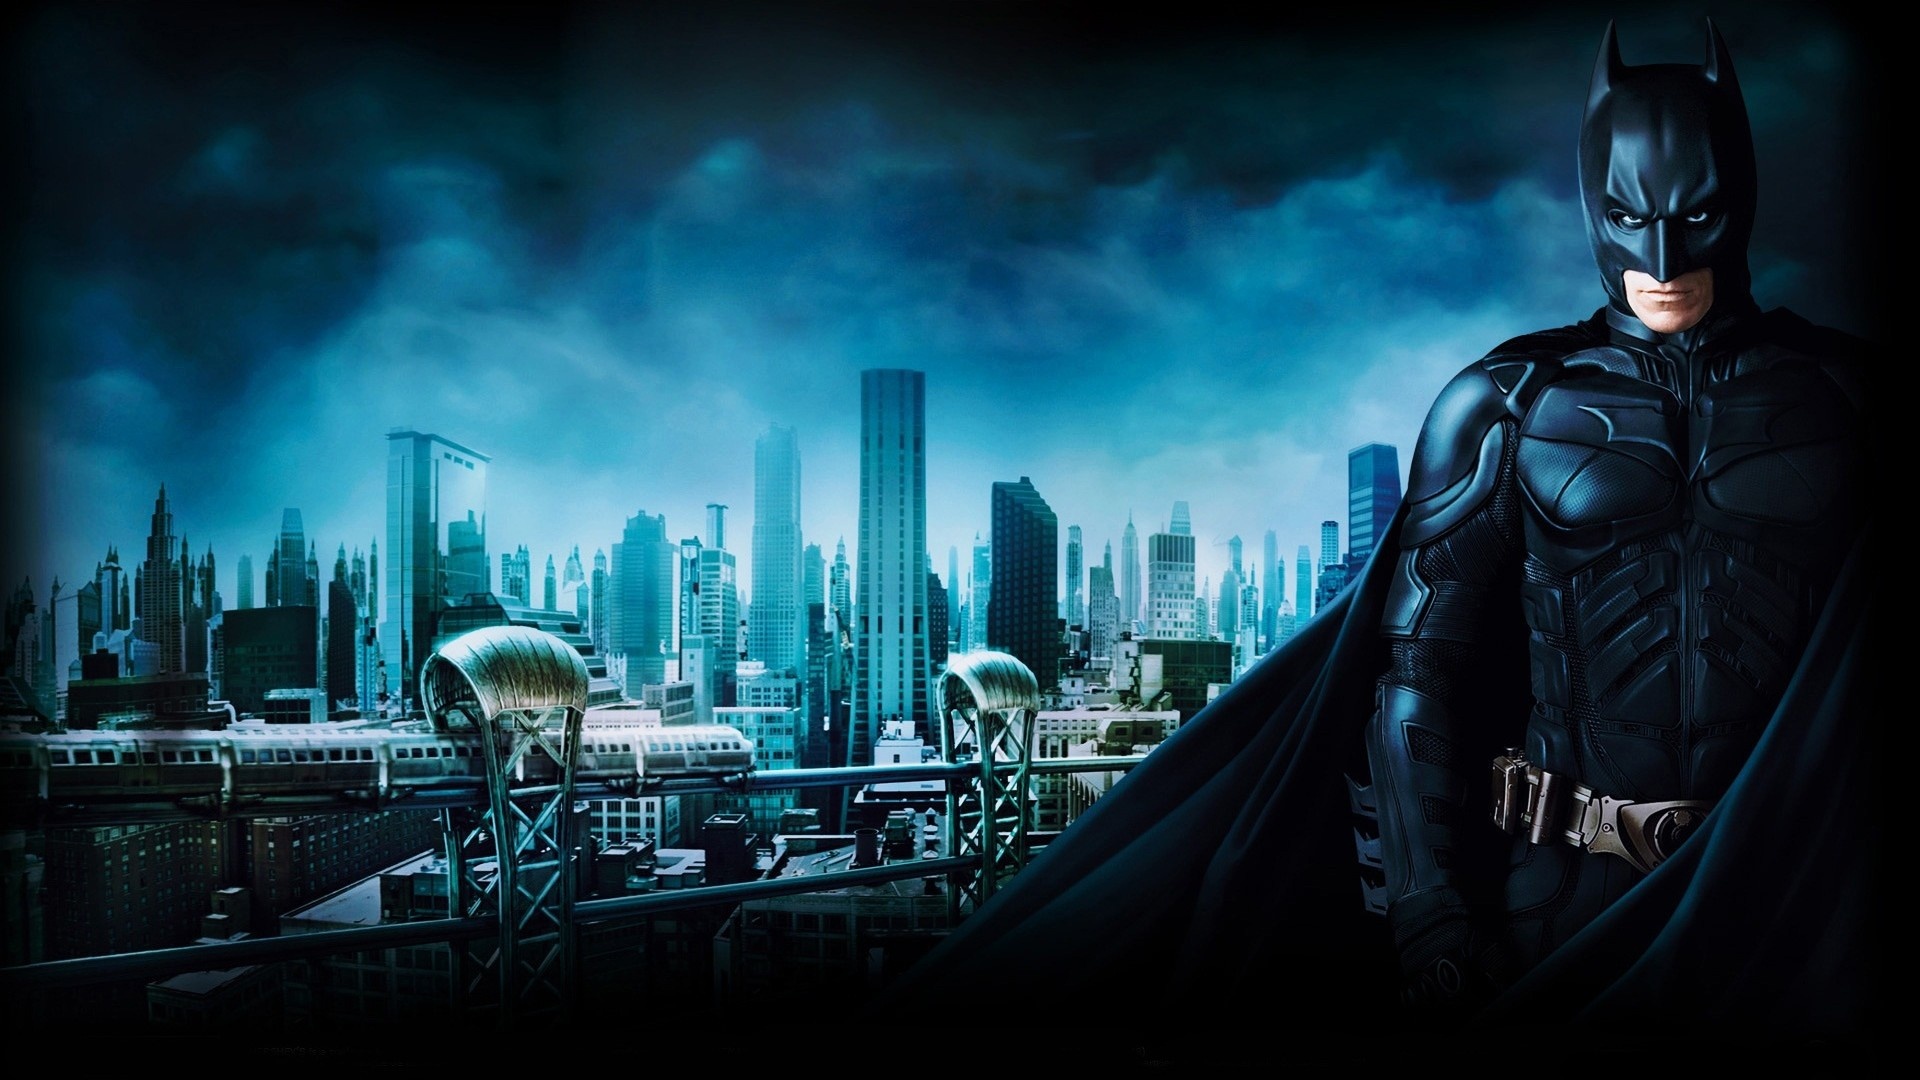 Batman Begins, Gotham train images, Wallpapers, Batman, 1920x1080 Full HD Desktop